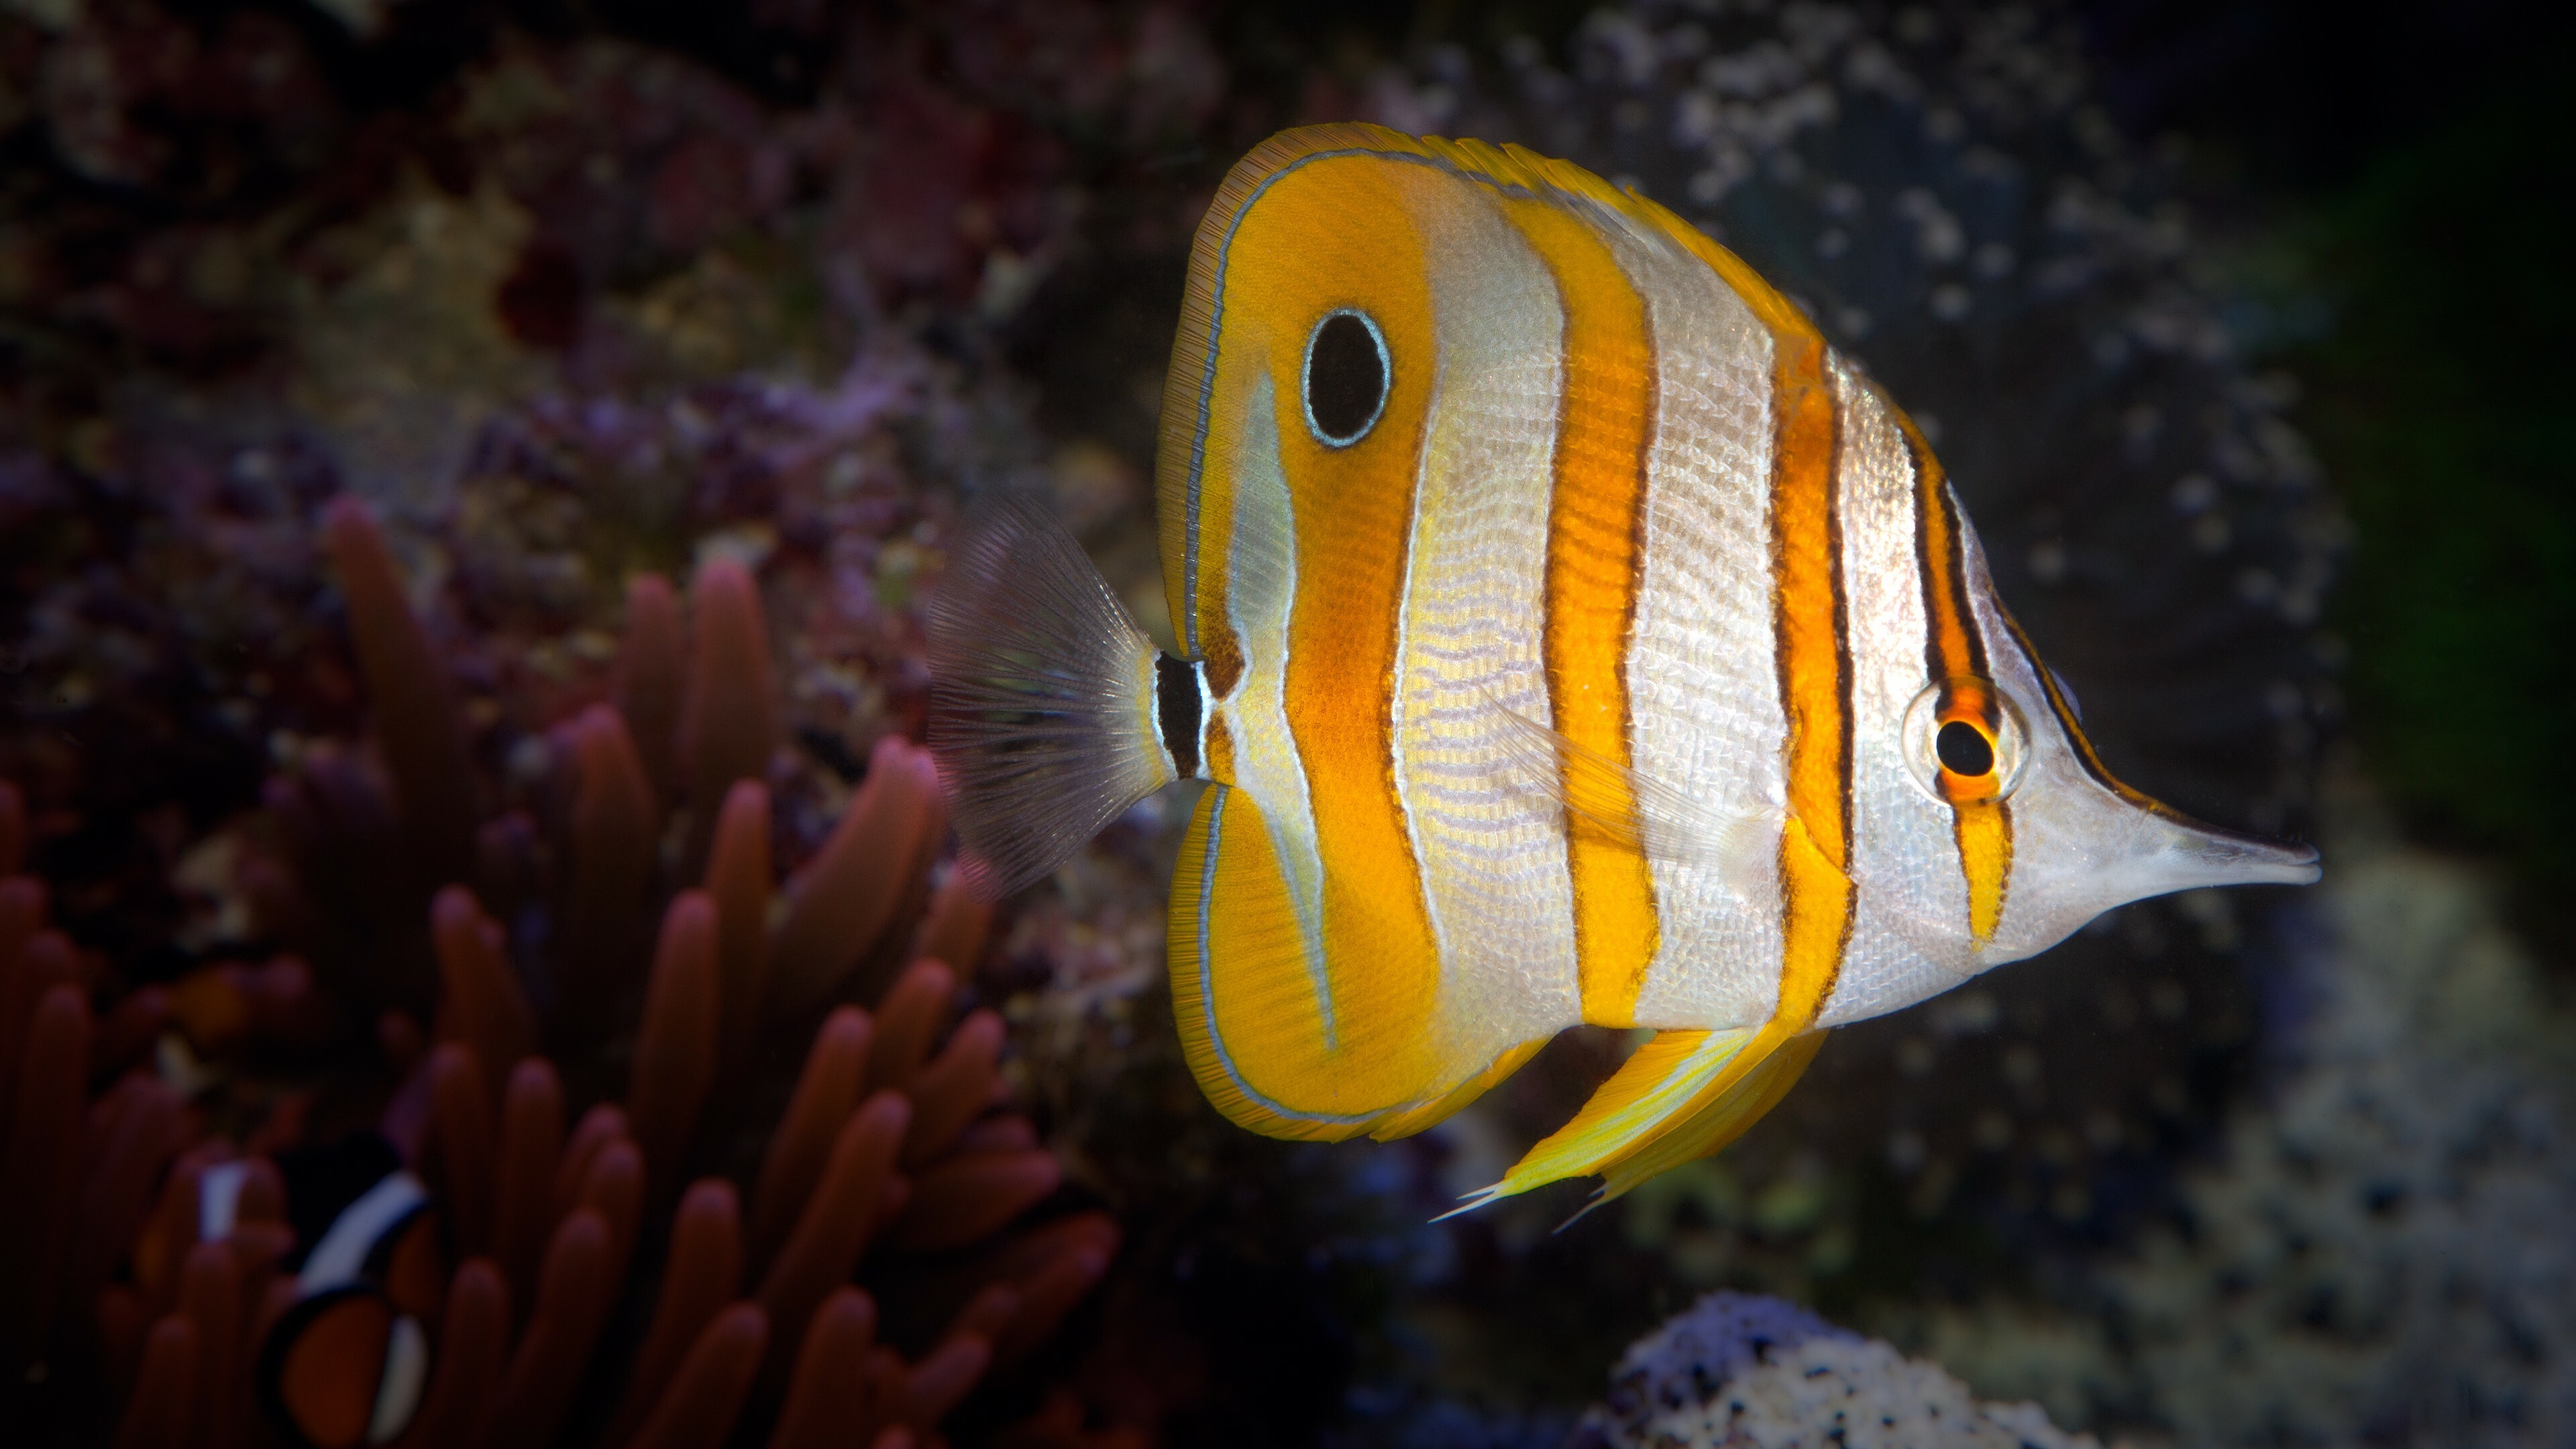 Coral Reef: Fish, Aquatic Life, Corals, Reefs. 3840x2160 4K Wallpaper.